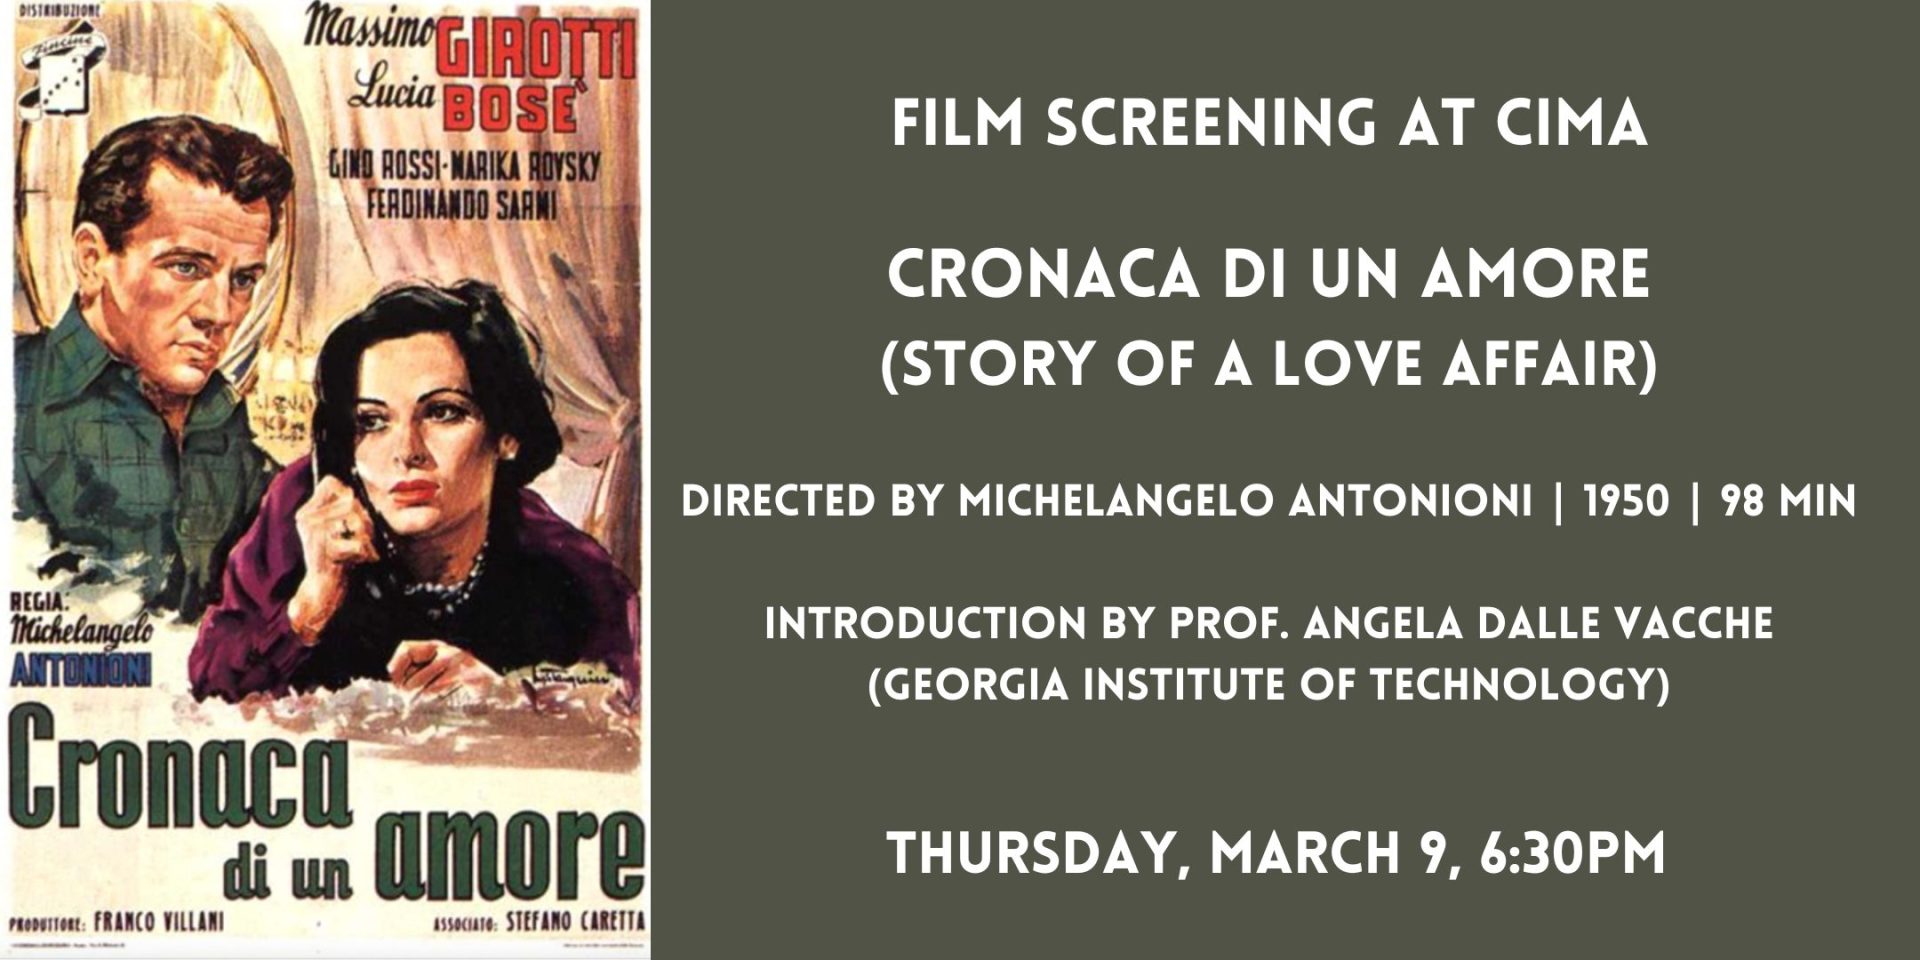 ‘Cronaca di un Amore’: a film screening at CIMA